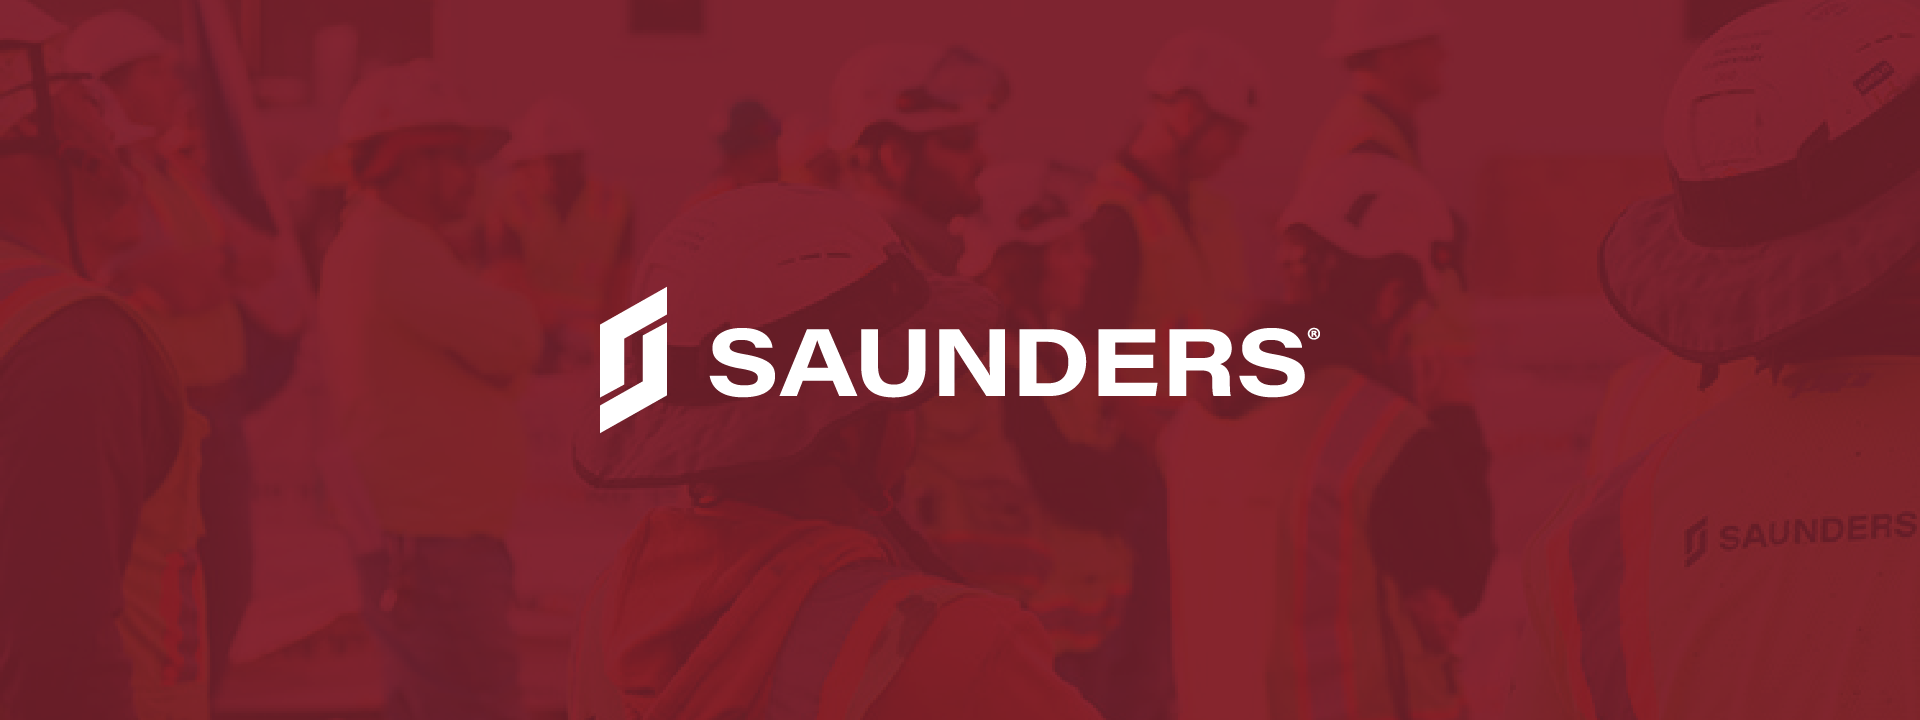 Saunders Website Refresh